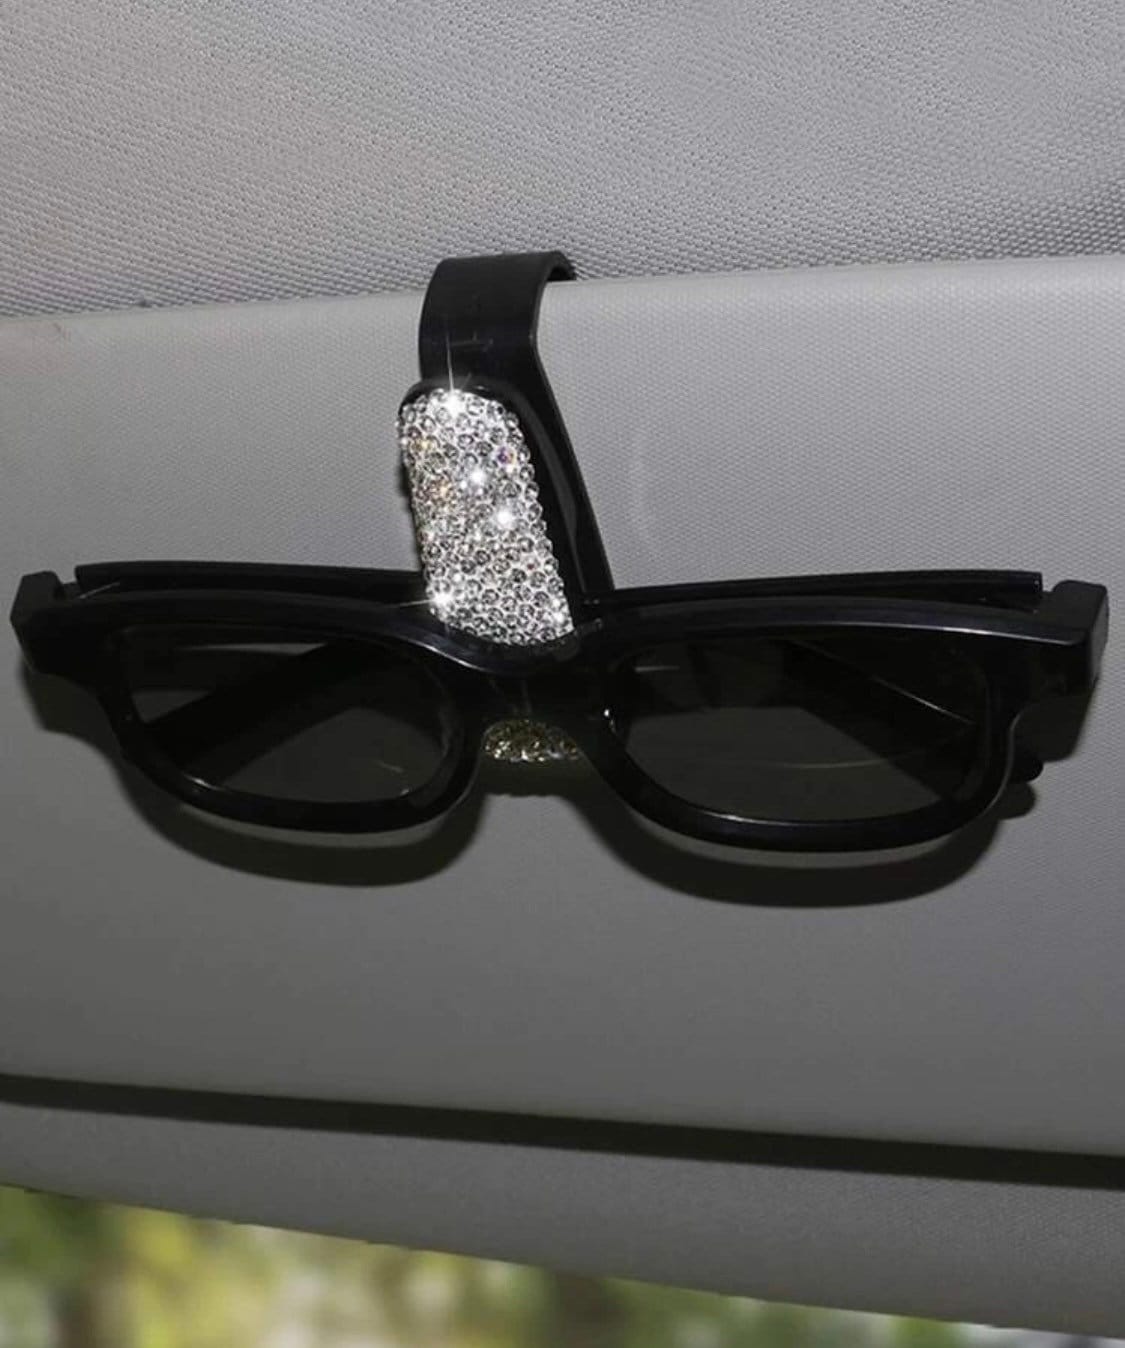 YnGia Glasses Holder for Car Sun Visor Sunglasses Holder Clip Car Eyeglasses Mount Hanger Clip Black Lightweight Car Sun Visor Glasses Case 